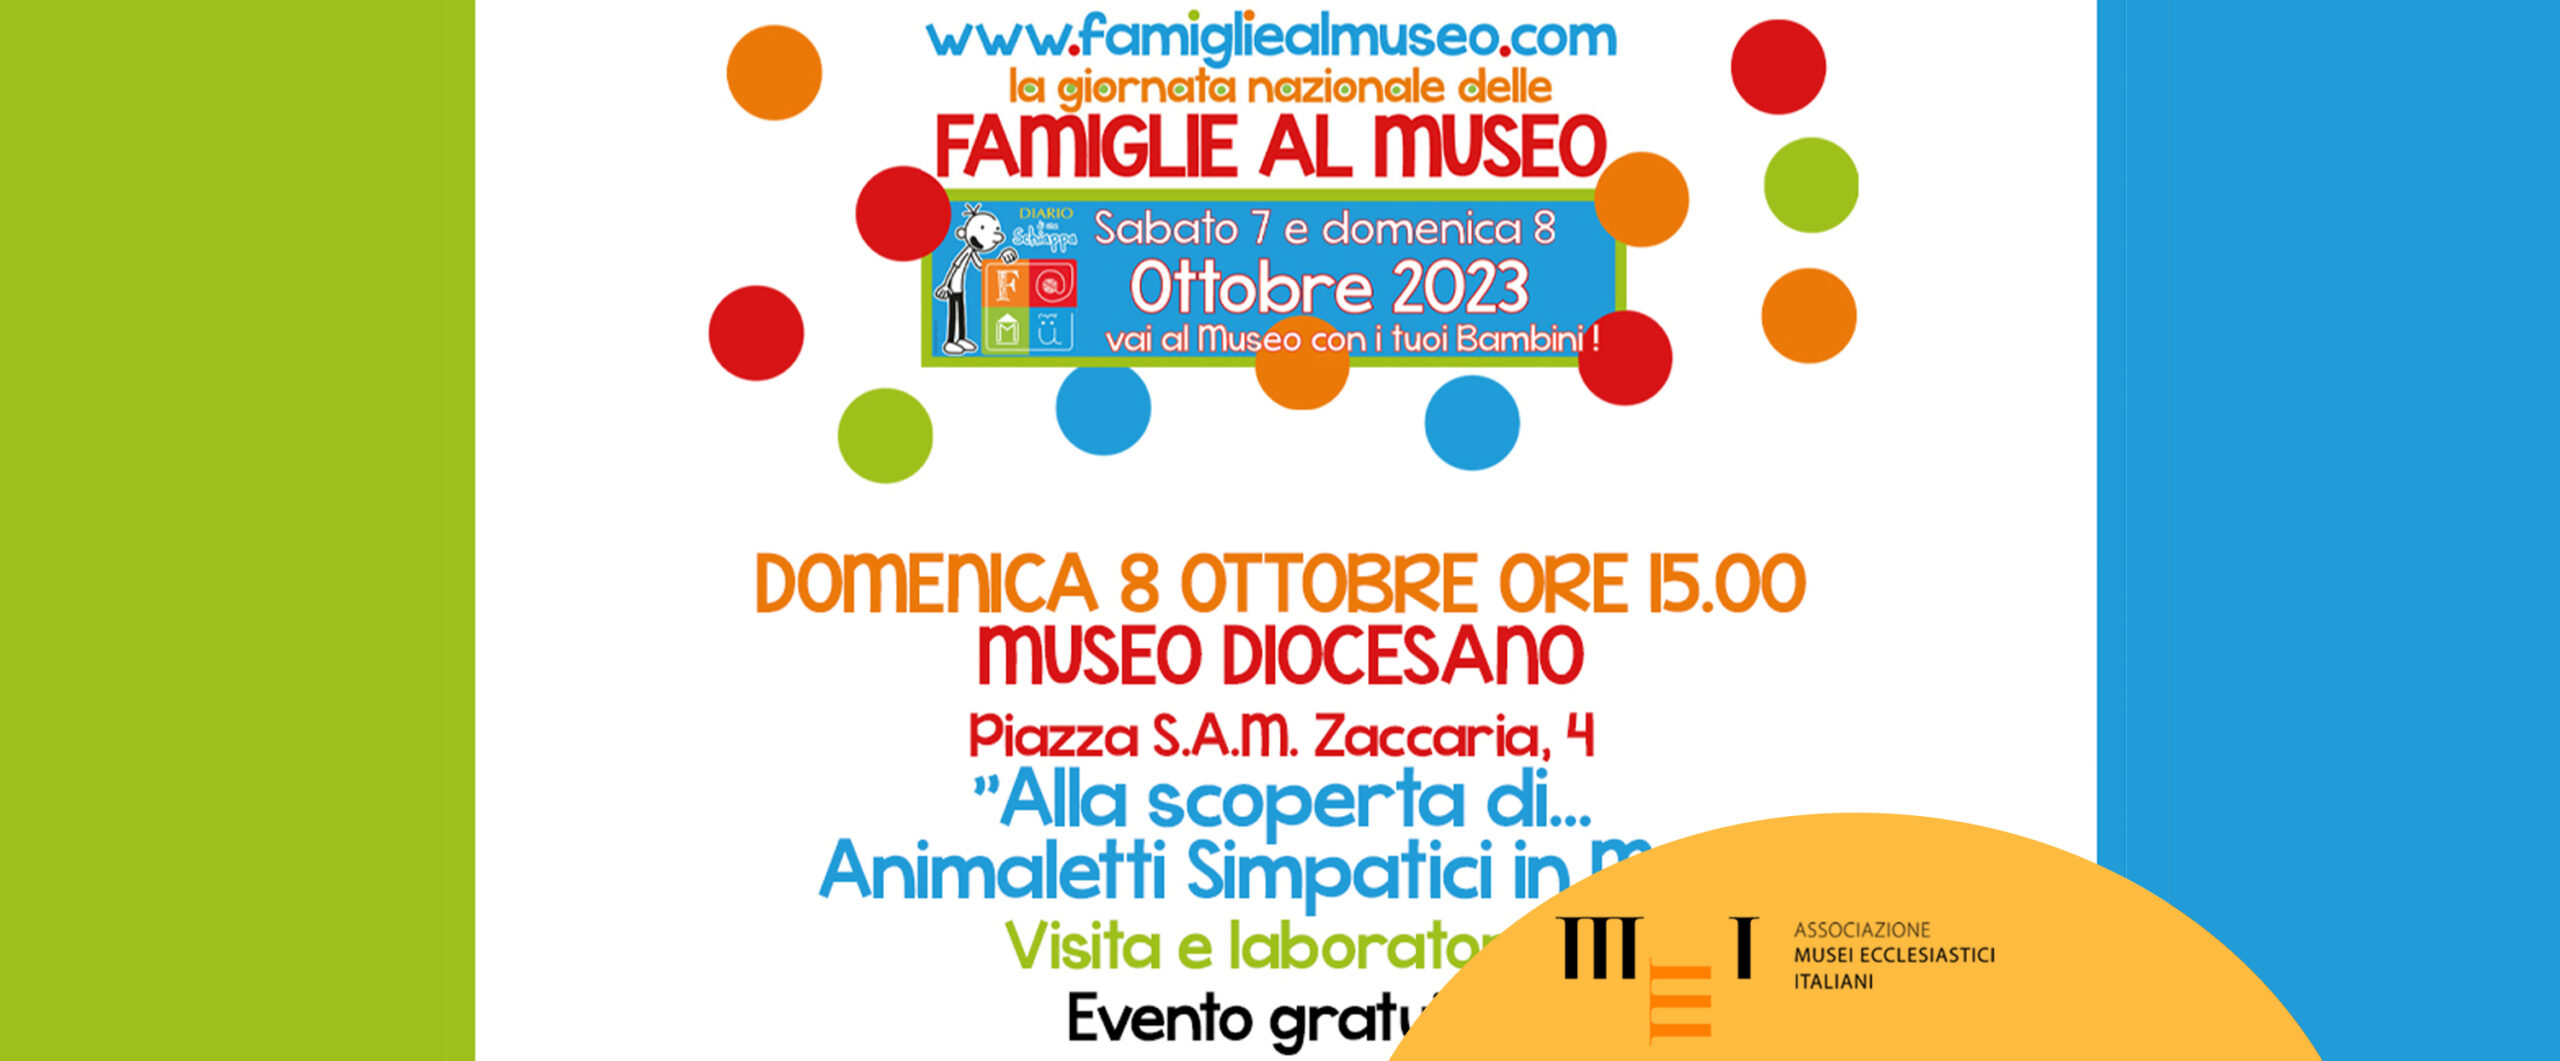 Giornata nazionale delle famiglie al museo, al Museo Dioceano di Cremona, 8 ottobre 2023